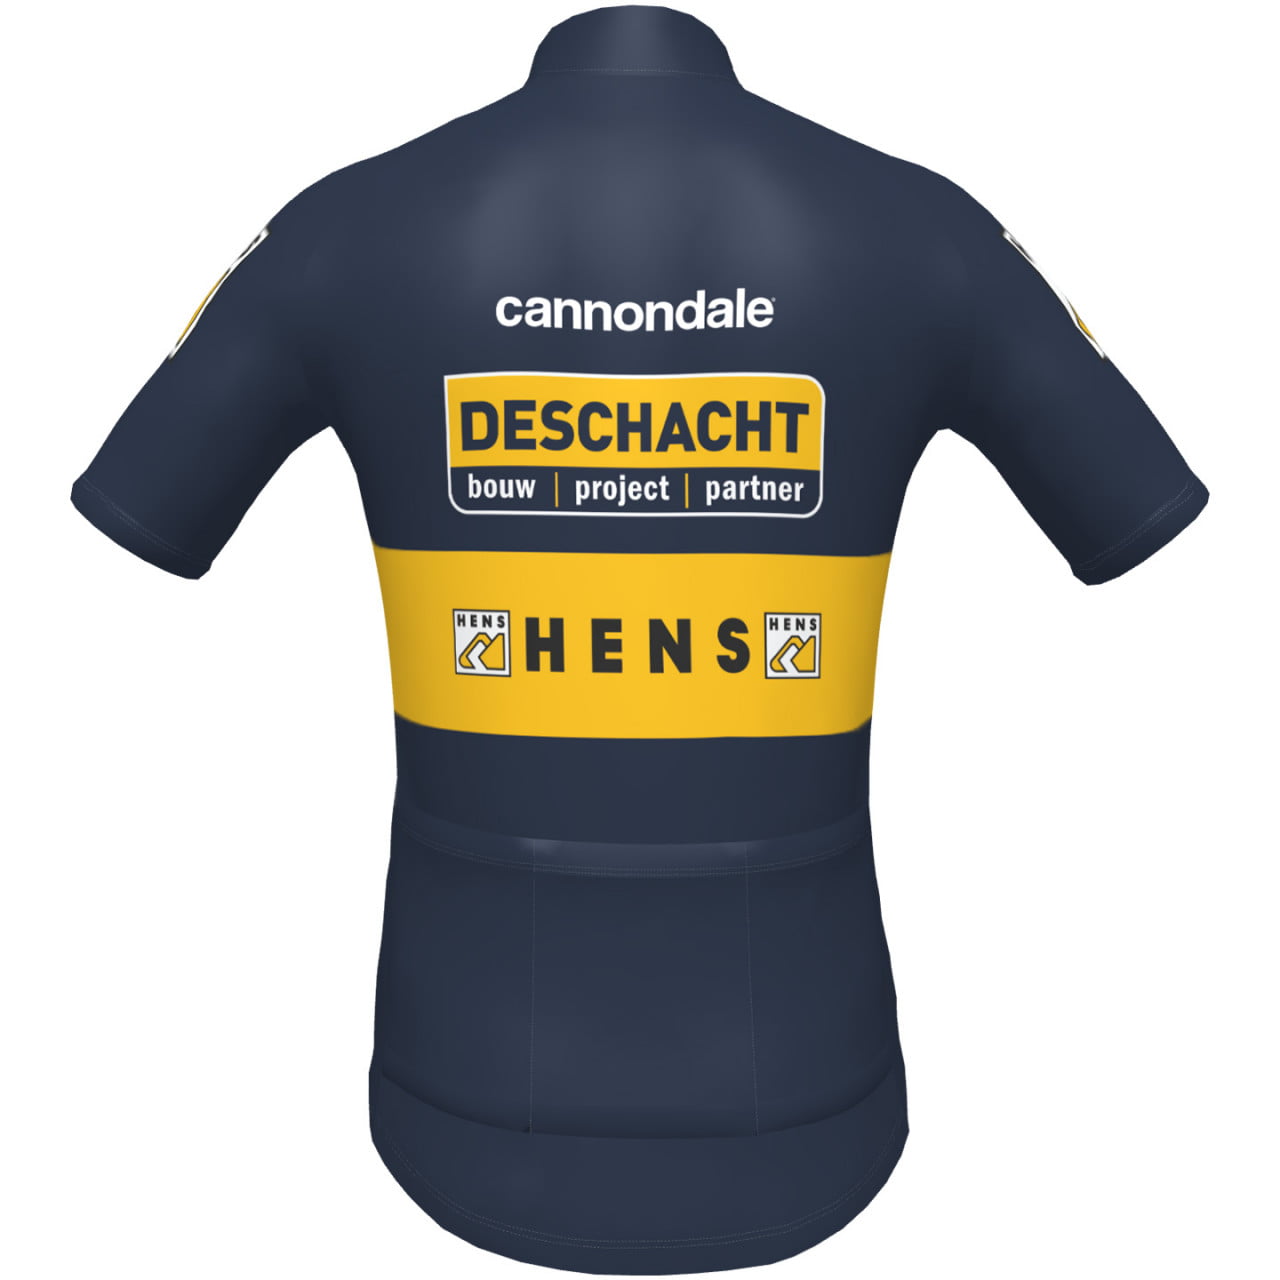 DESCHACHT - HENS - MEAS Short Sleeve Jersey 2022